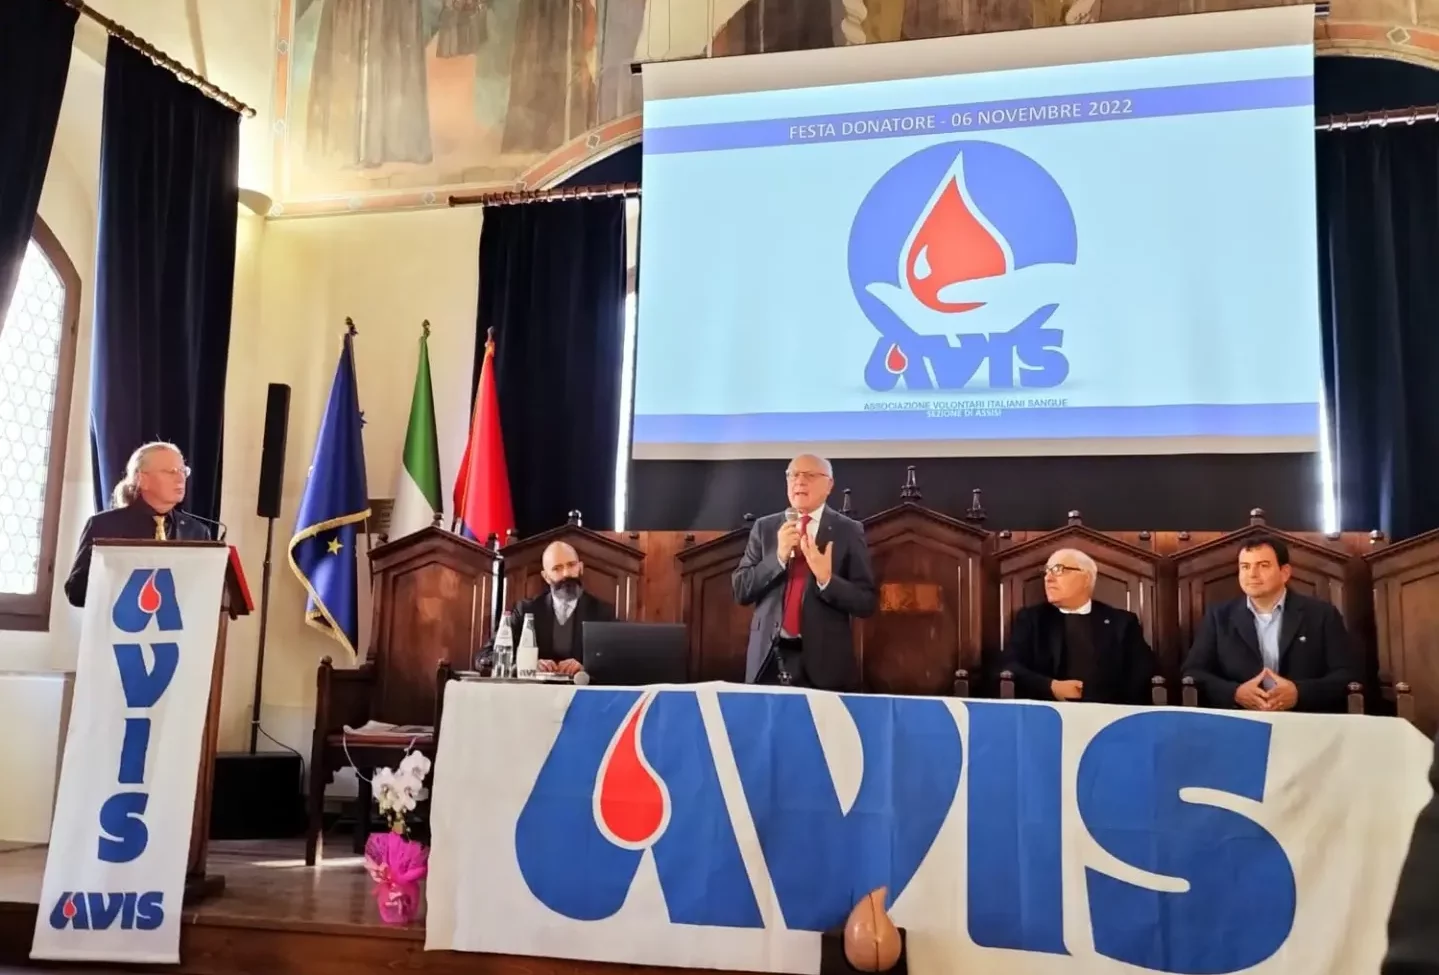 Avis di Assisi, buone notizie: oltre mille donatori nel 2022